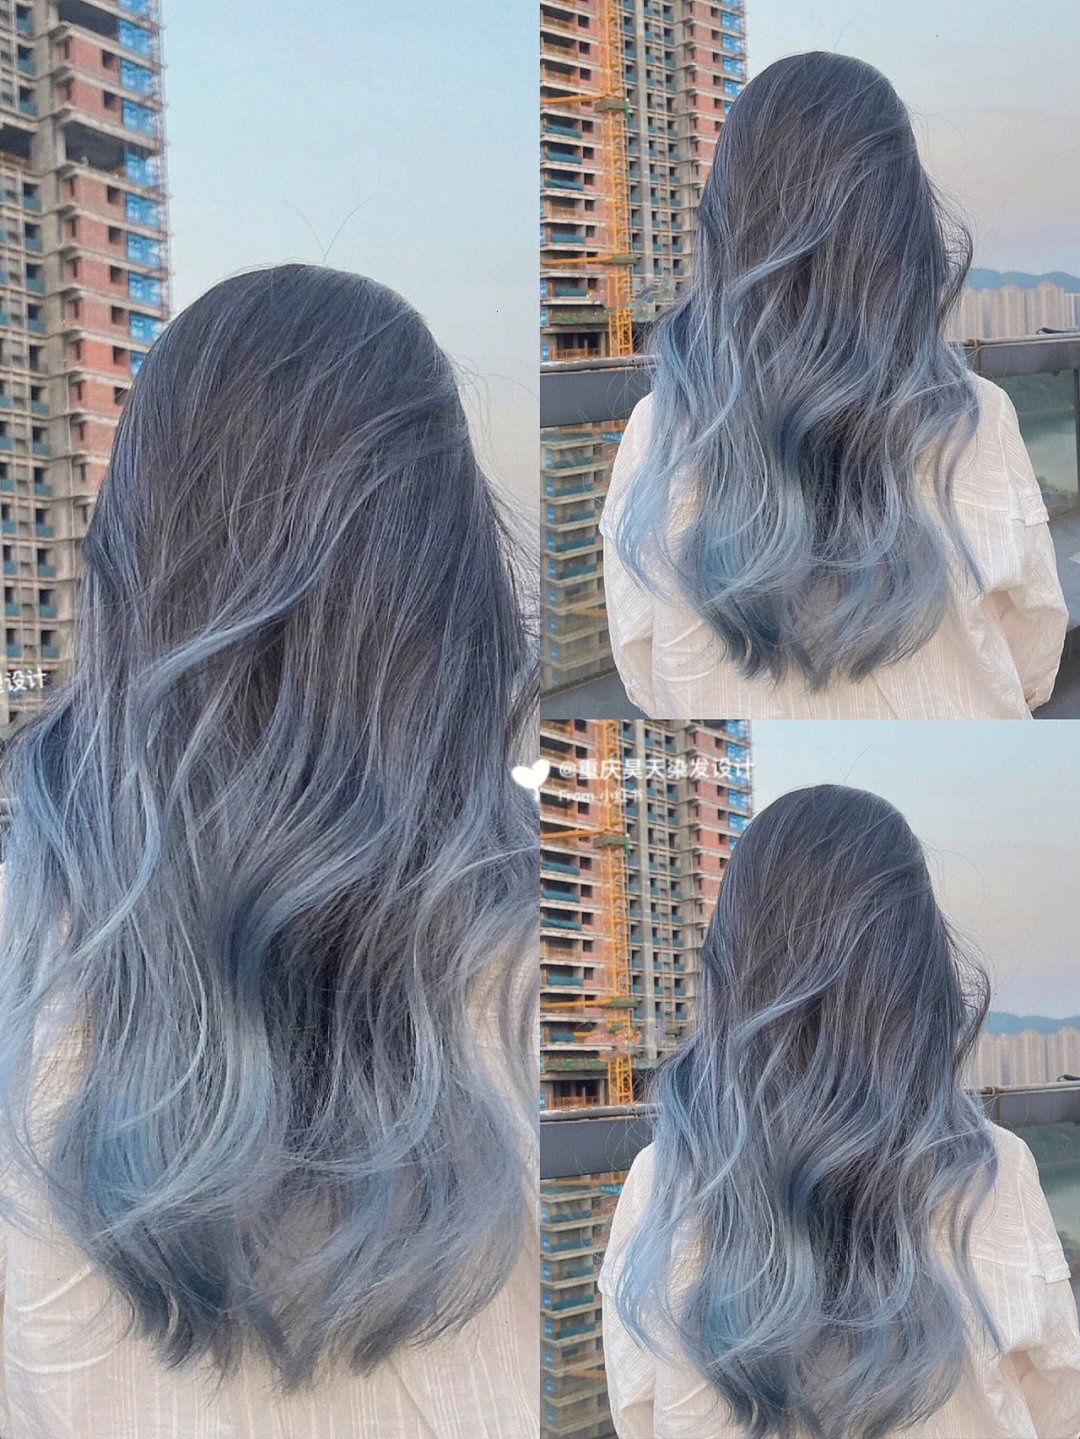 发色,还不想掉色太快,沟通后根据客人喜欢的感觉最后选择了蓝灰色巴黎